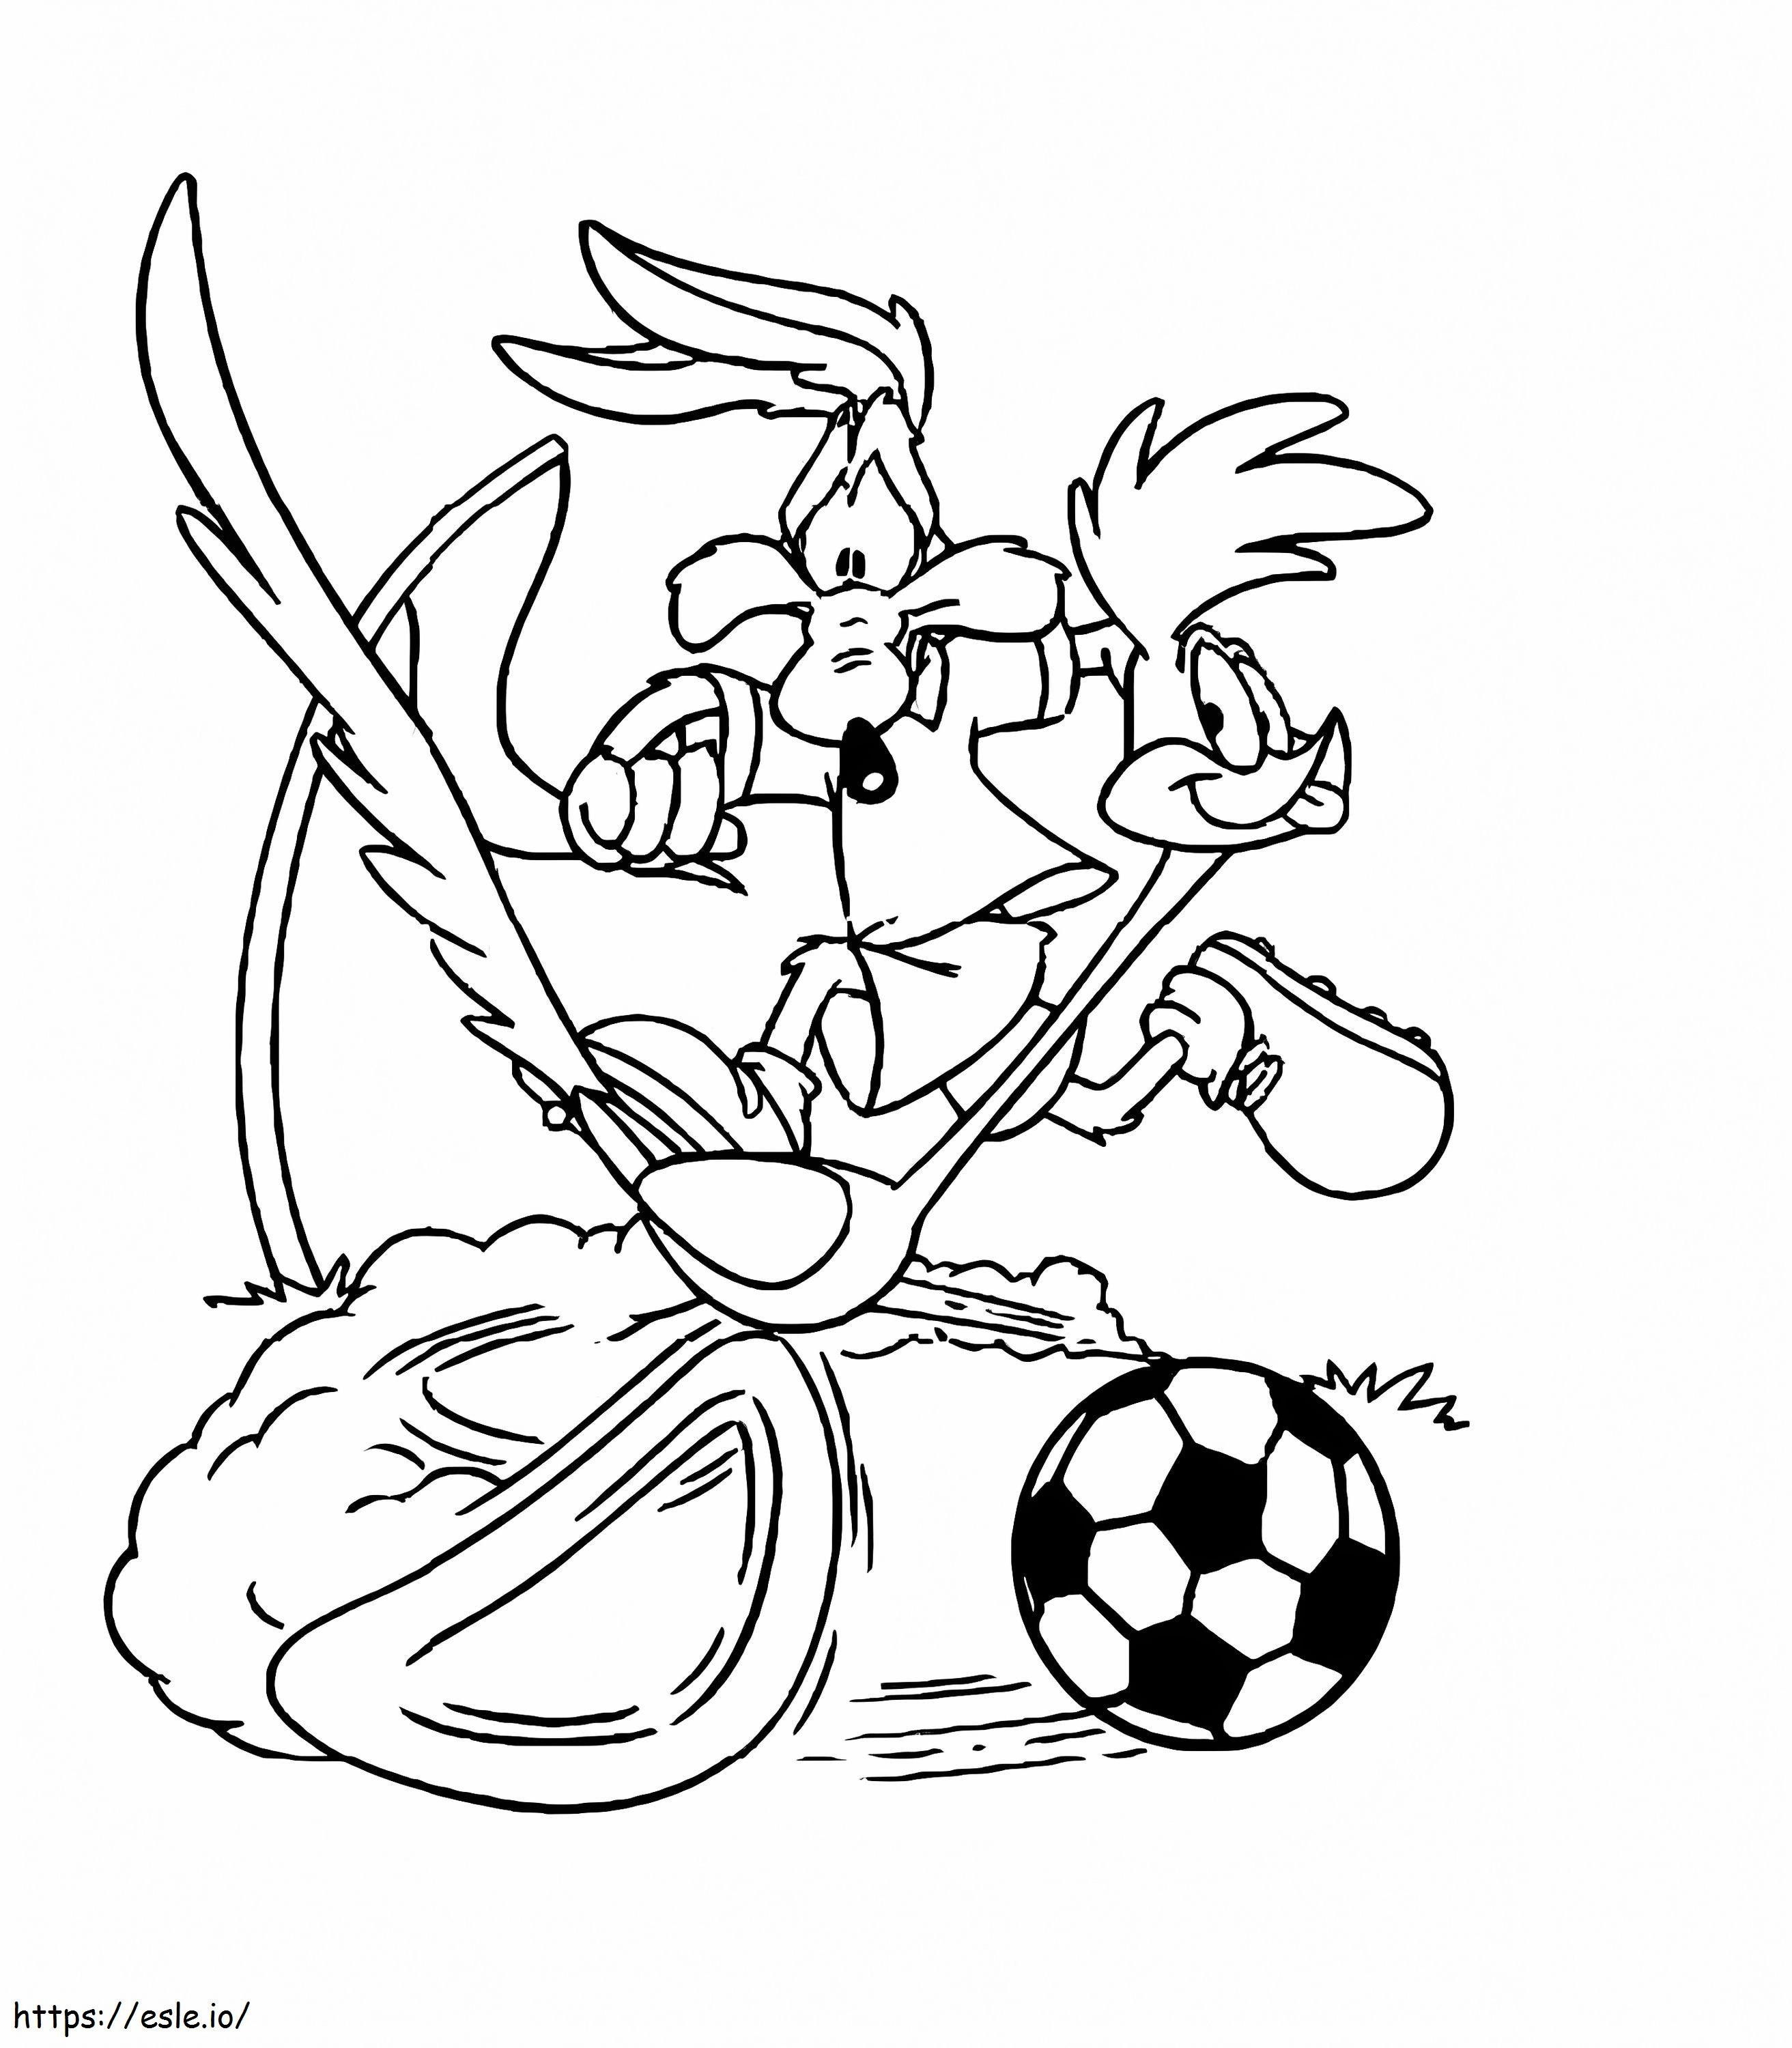 Road Runner și Wile E. Coyote joacă fotbal de colorat